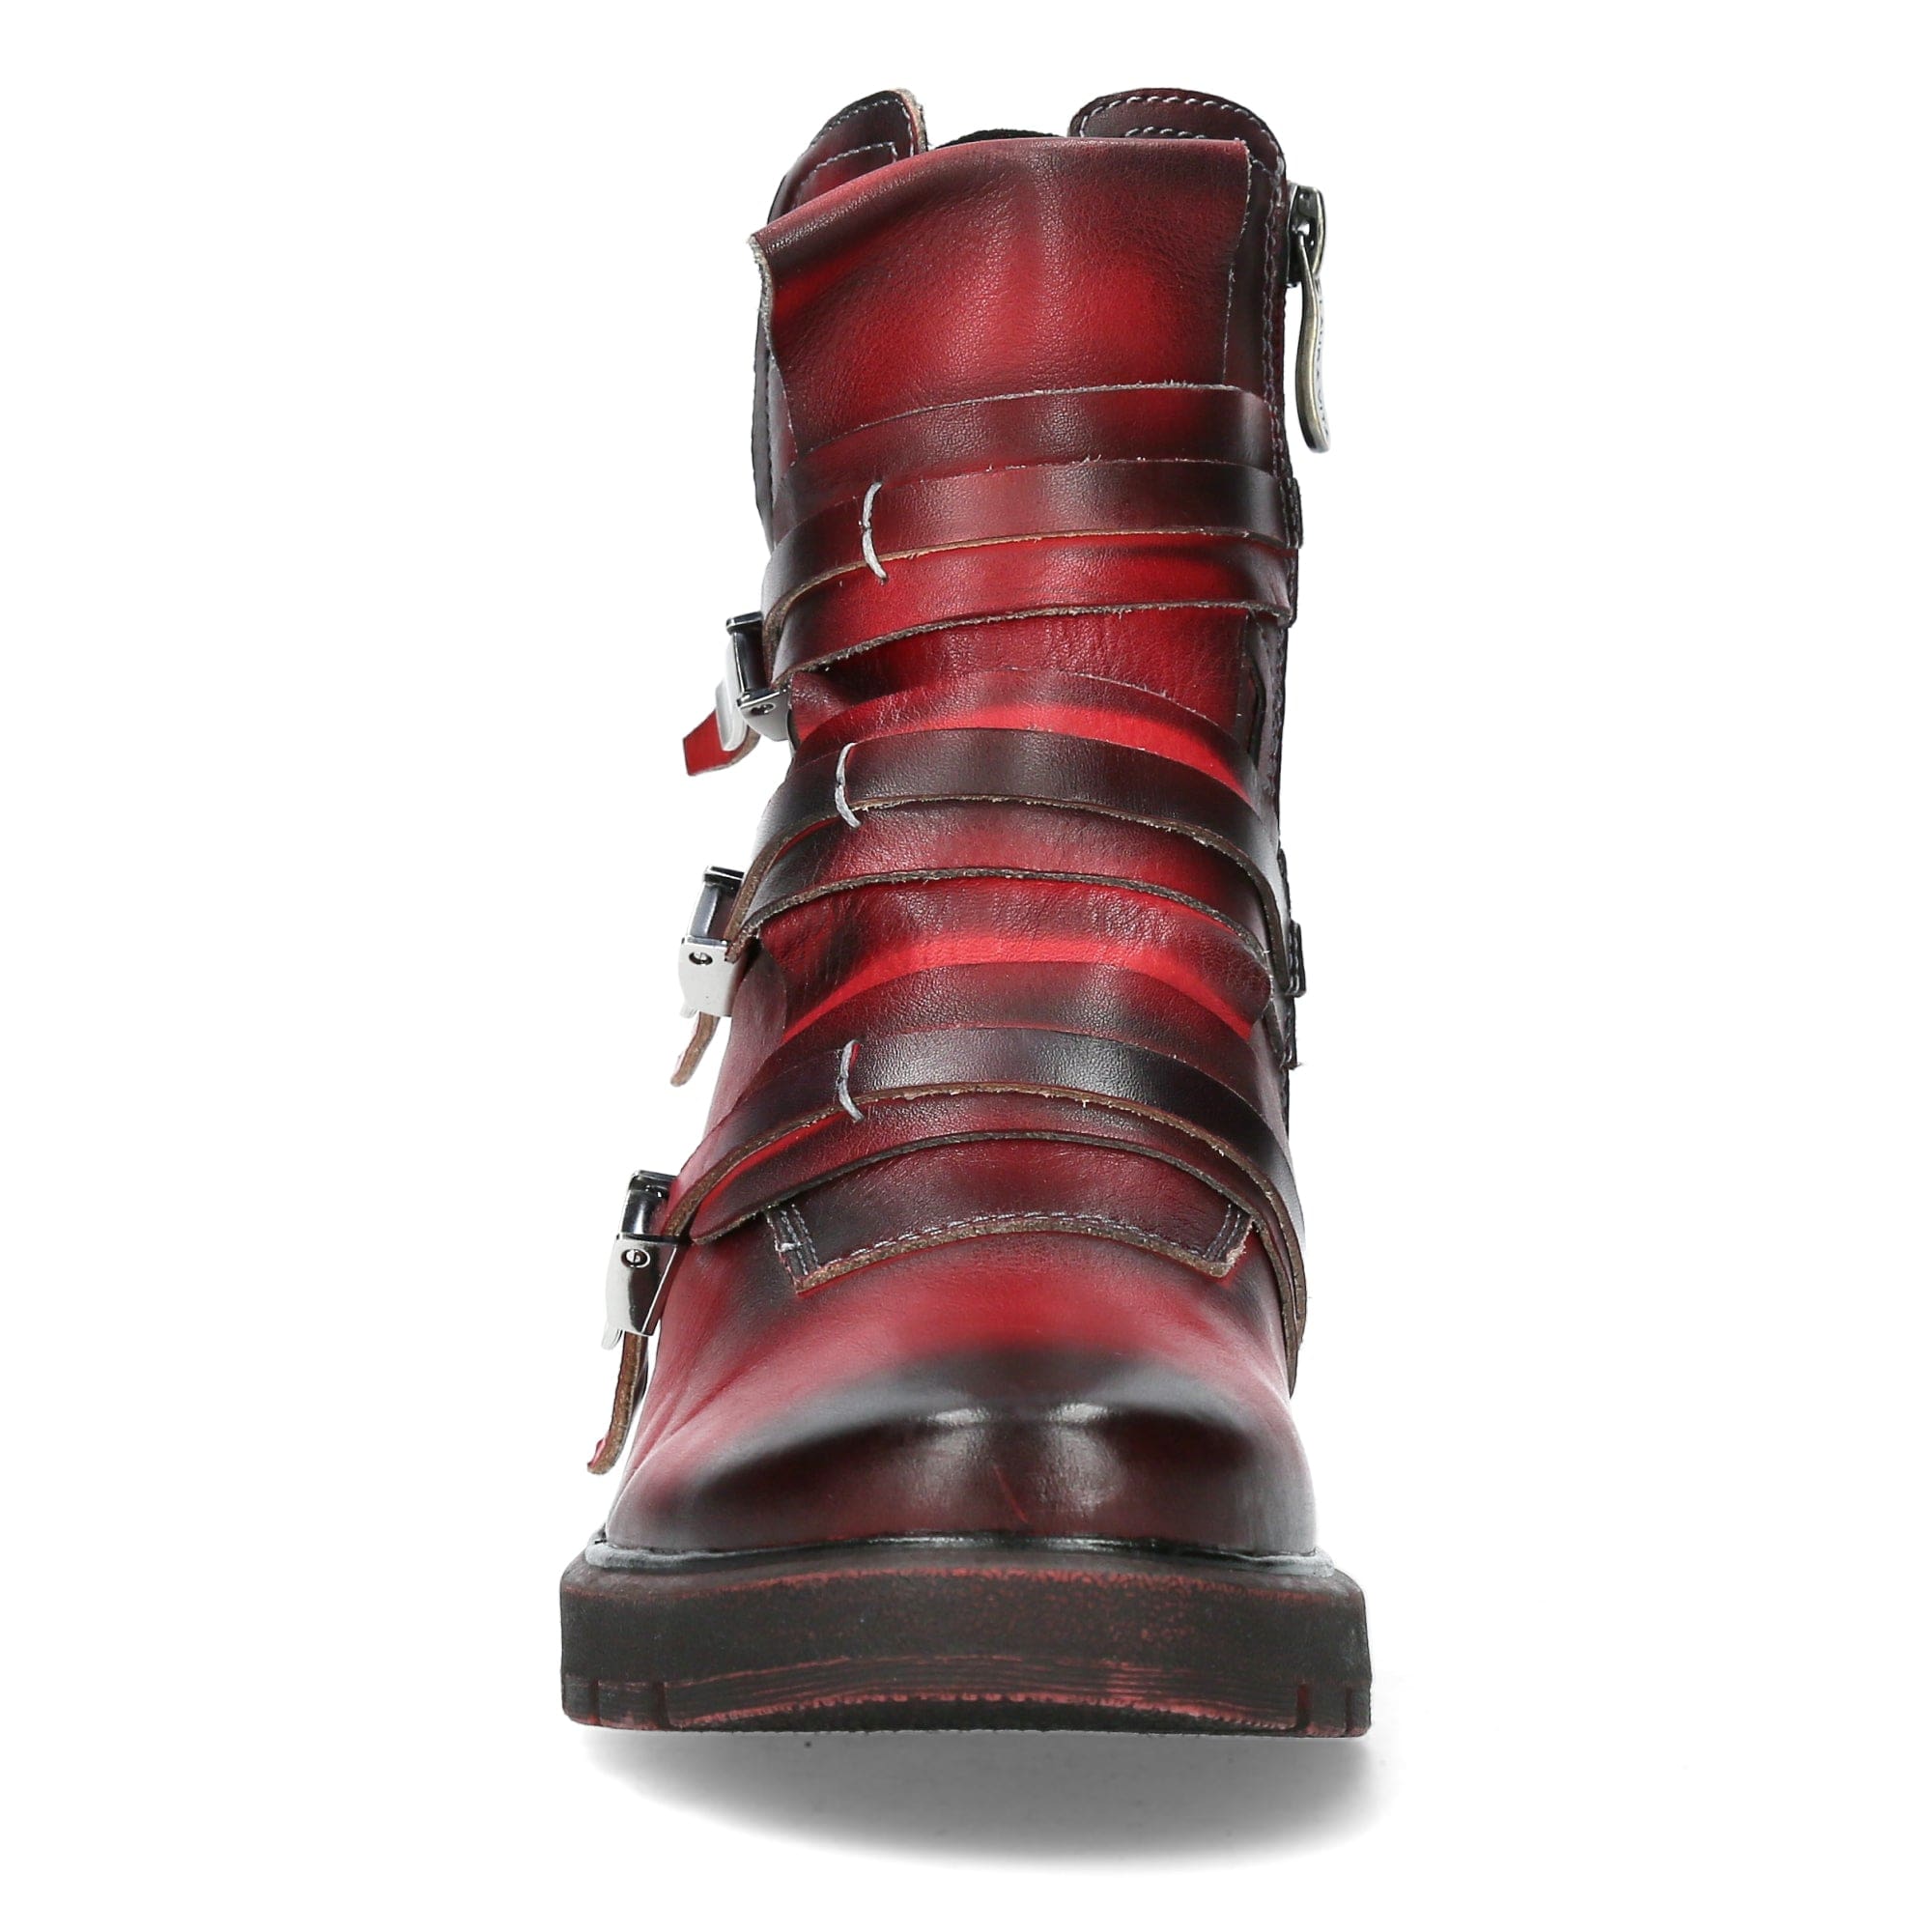 Shoe IDCEAO 03 - Boots